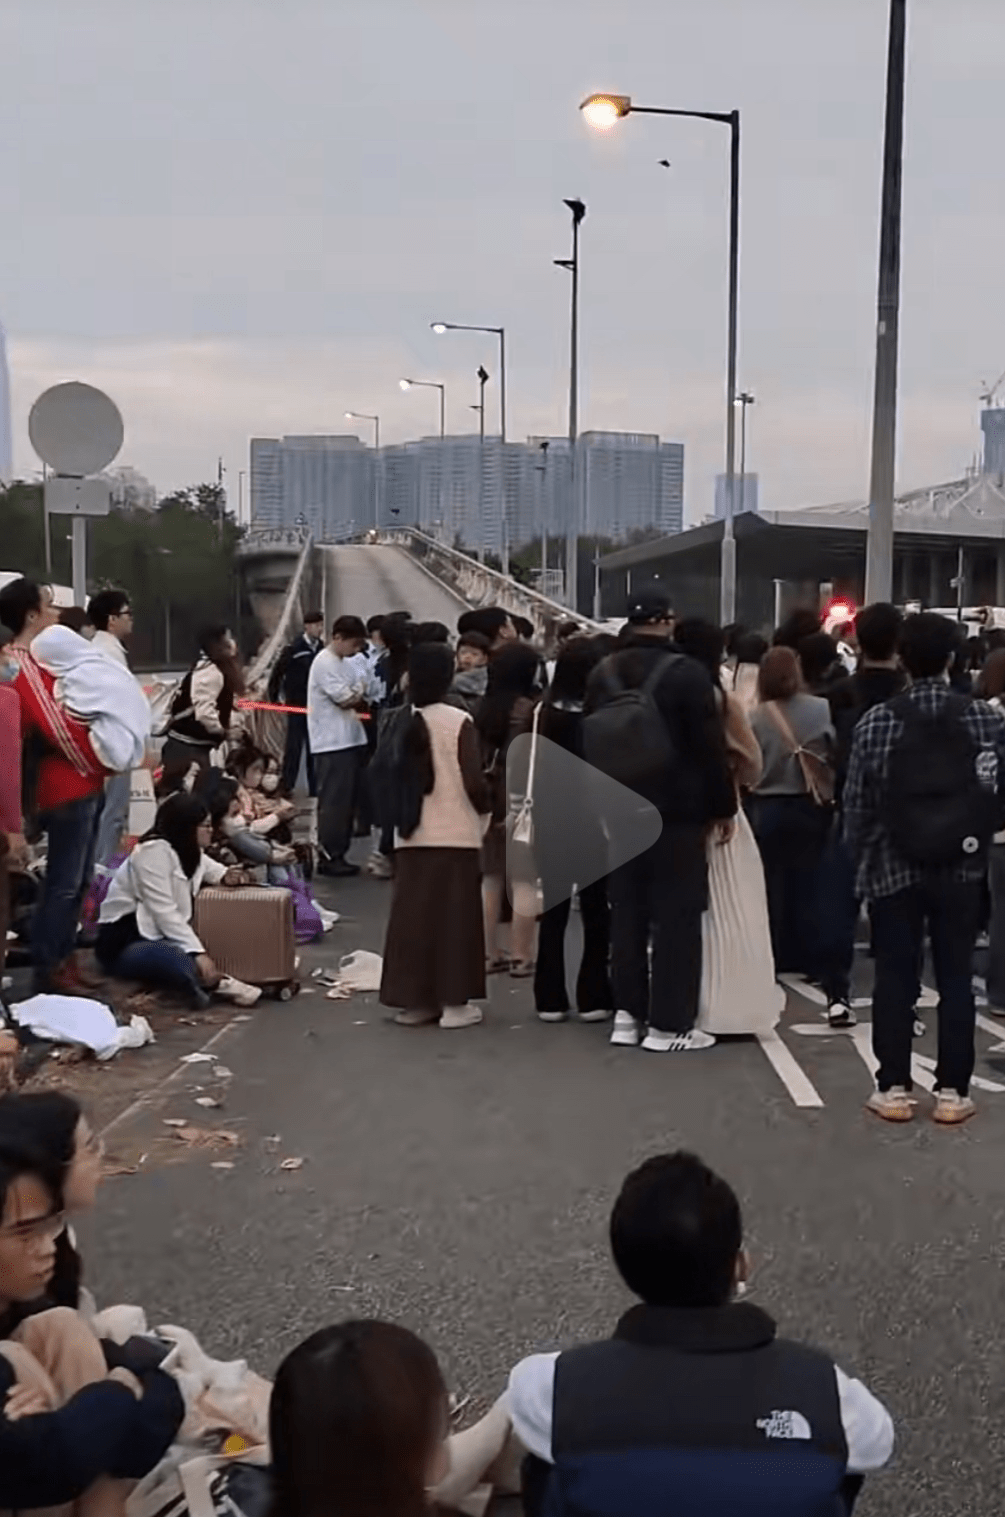 皇崗邊檢站執勤民警就查驗入境深圳旅客近4.5萬人次。抖音影片截圖